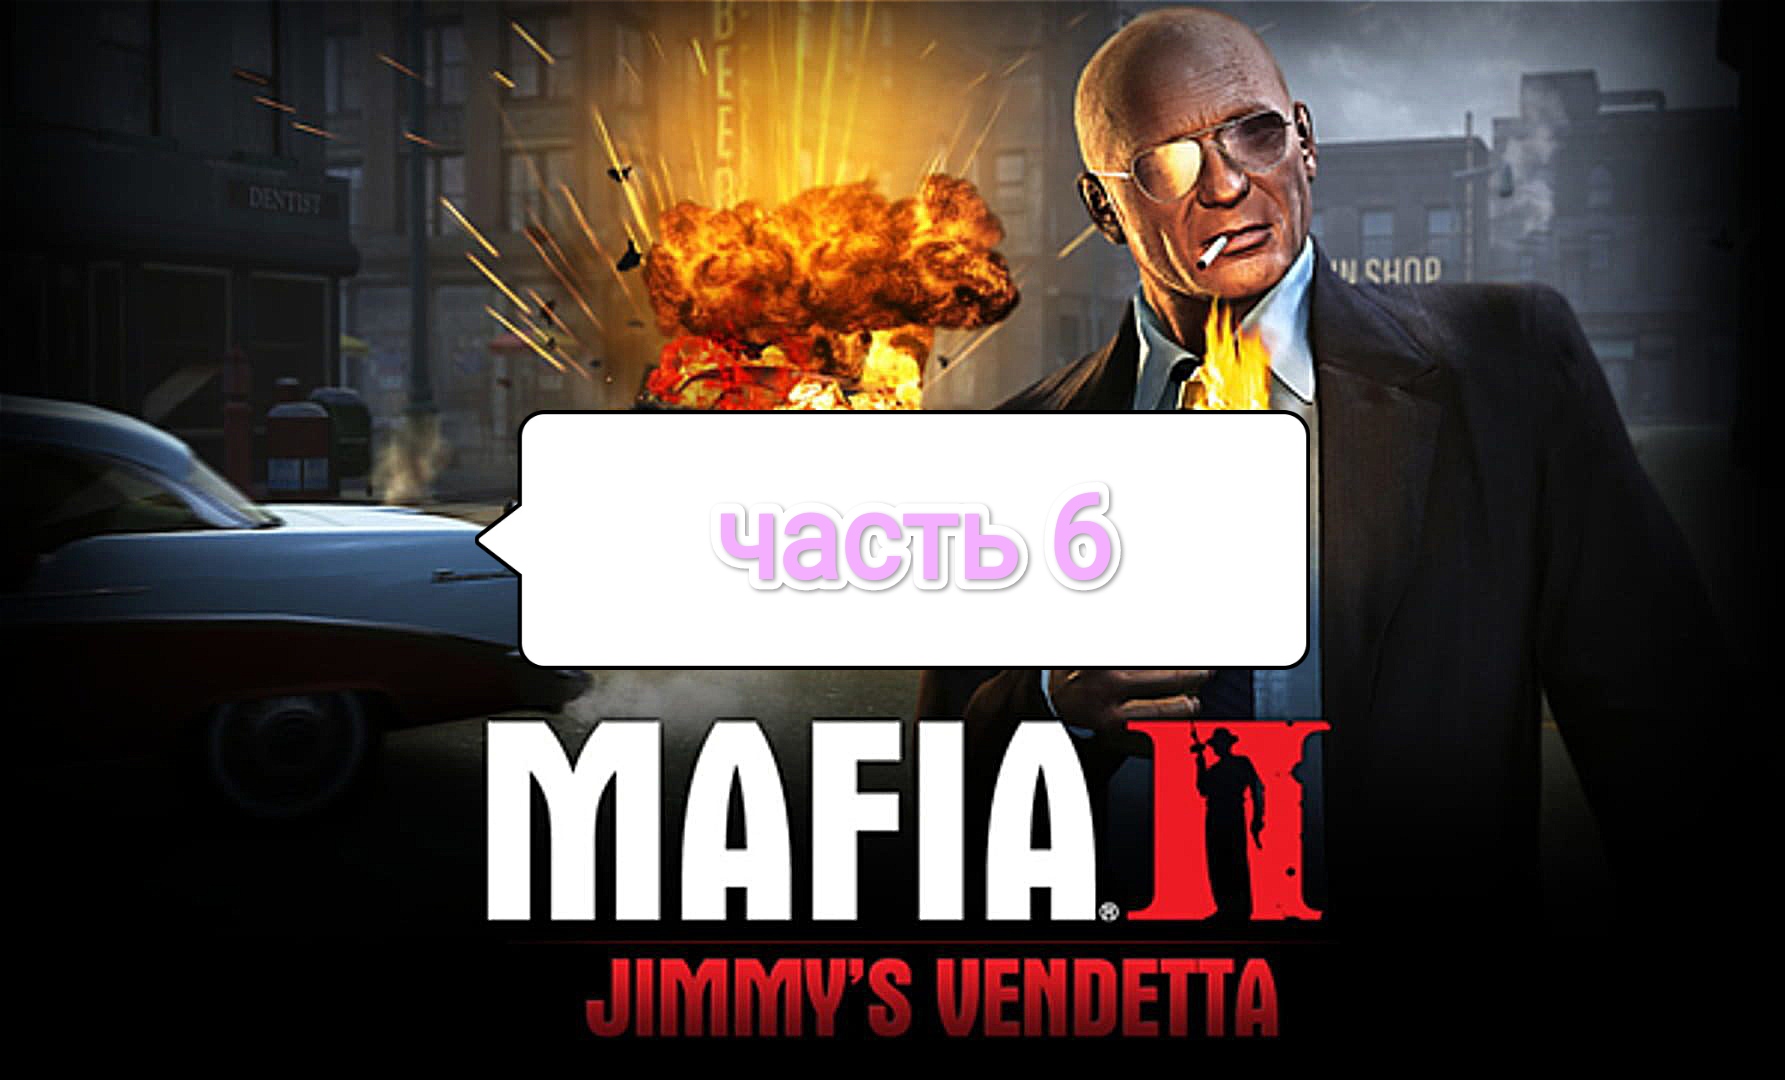 Mafia II Jimmy's Vendetta - визитная карточка